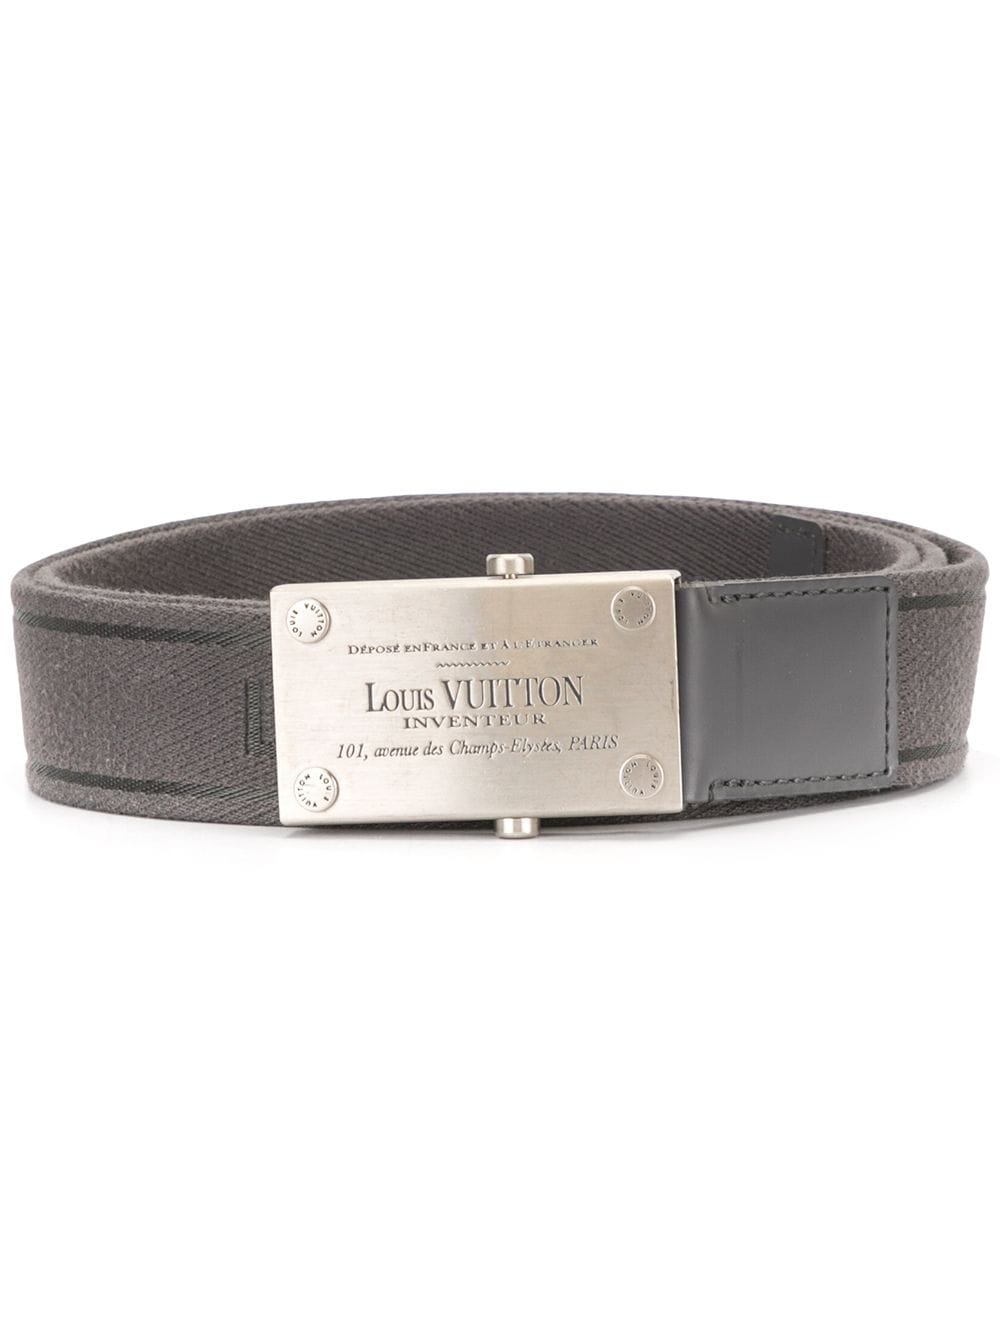 Louis vuitton used belt LV Inventeur.